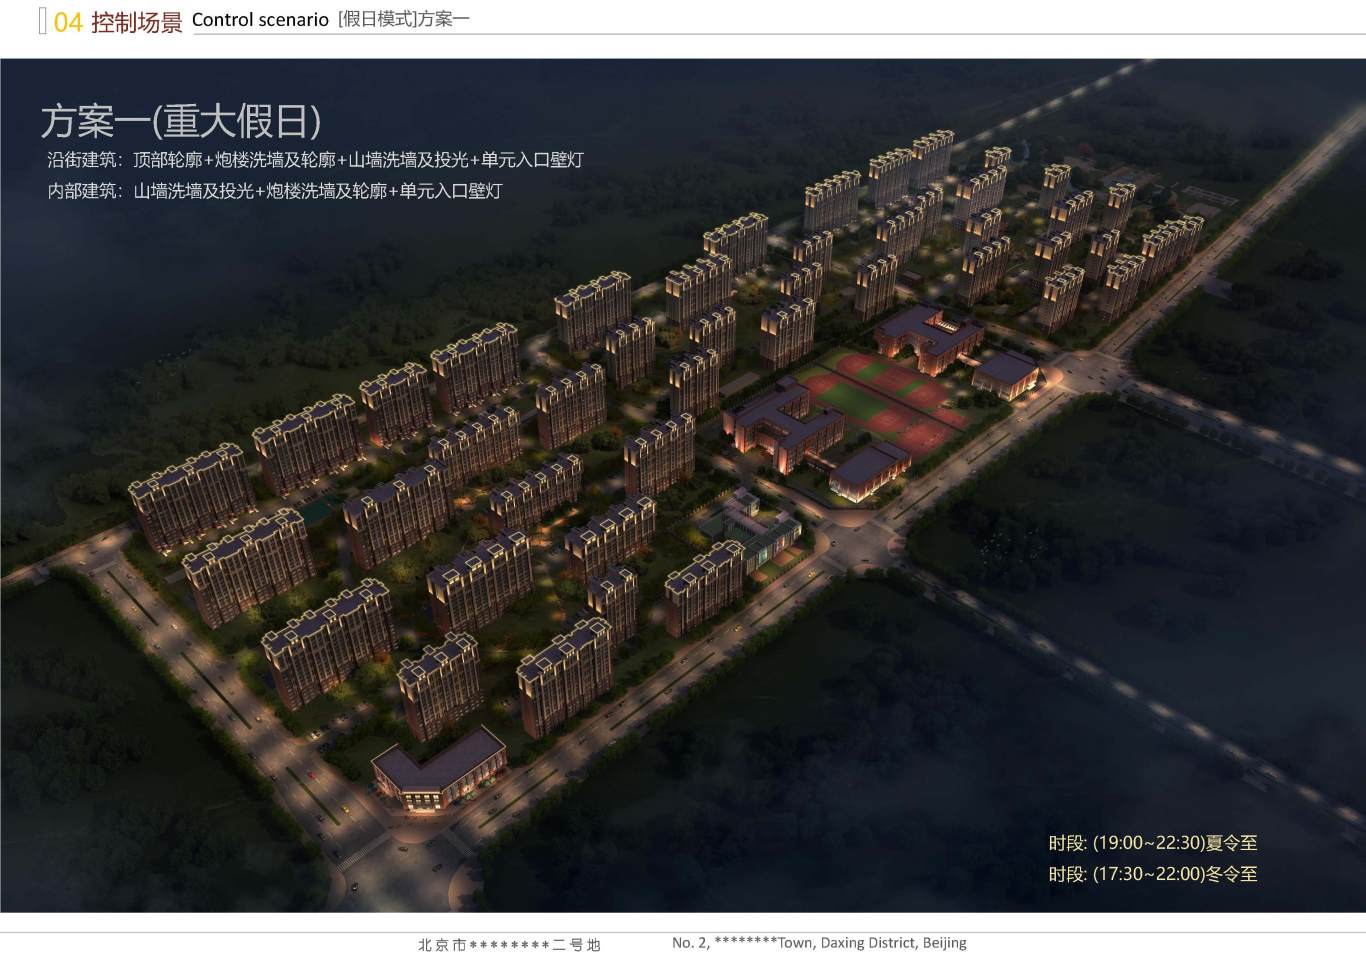 北京市大兴区*****二号地夜景照明项目案例图38